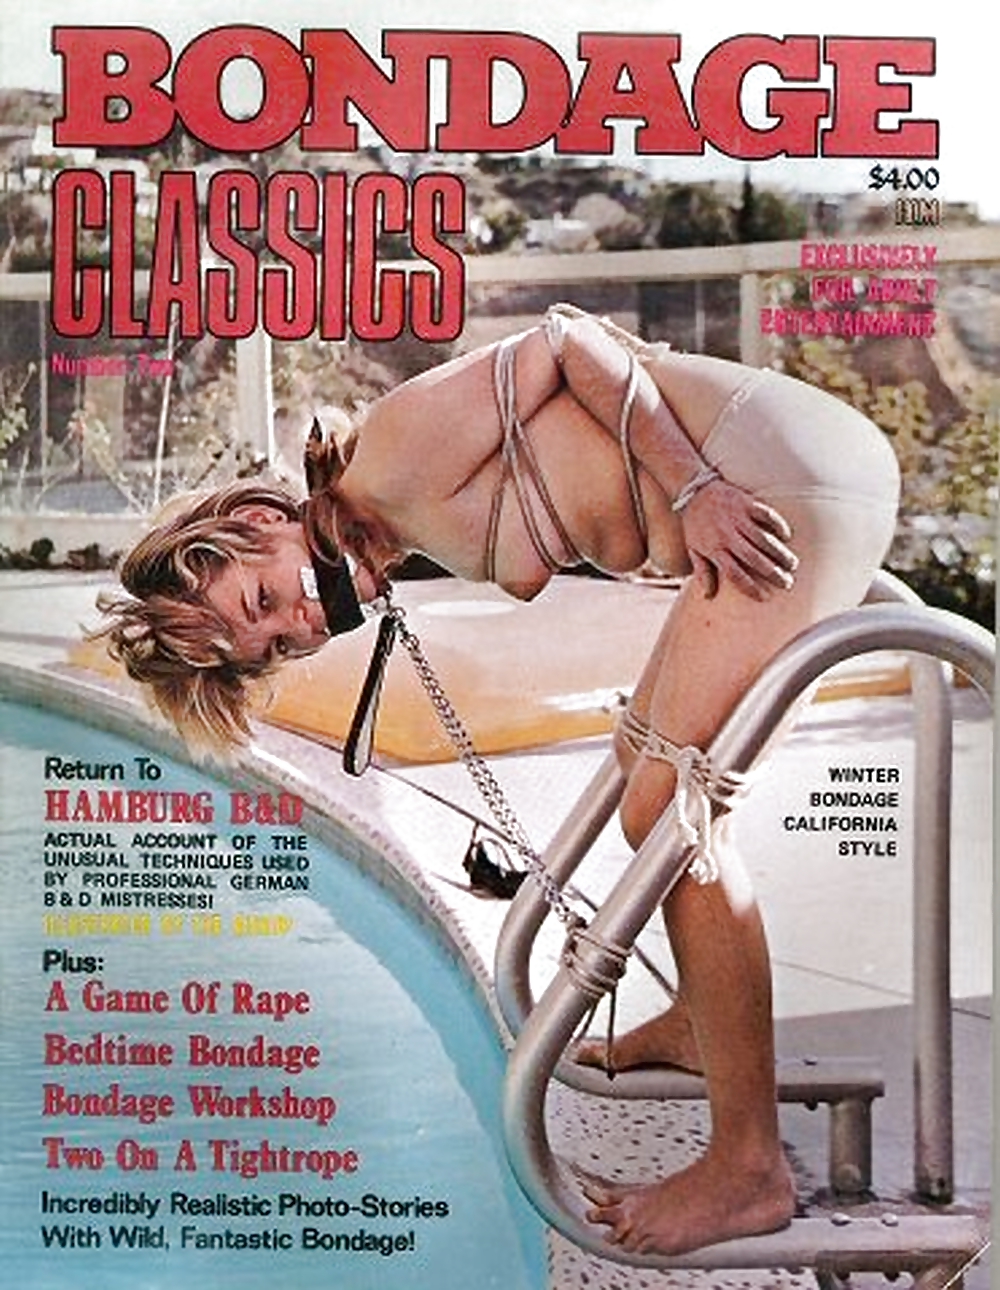 Le mie riviste bondage d'epoca (copertine)
 #22184471